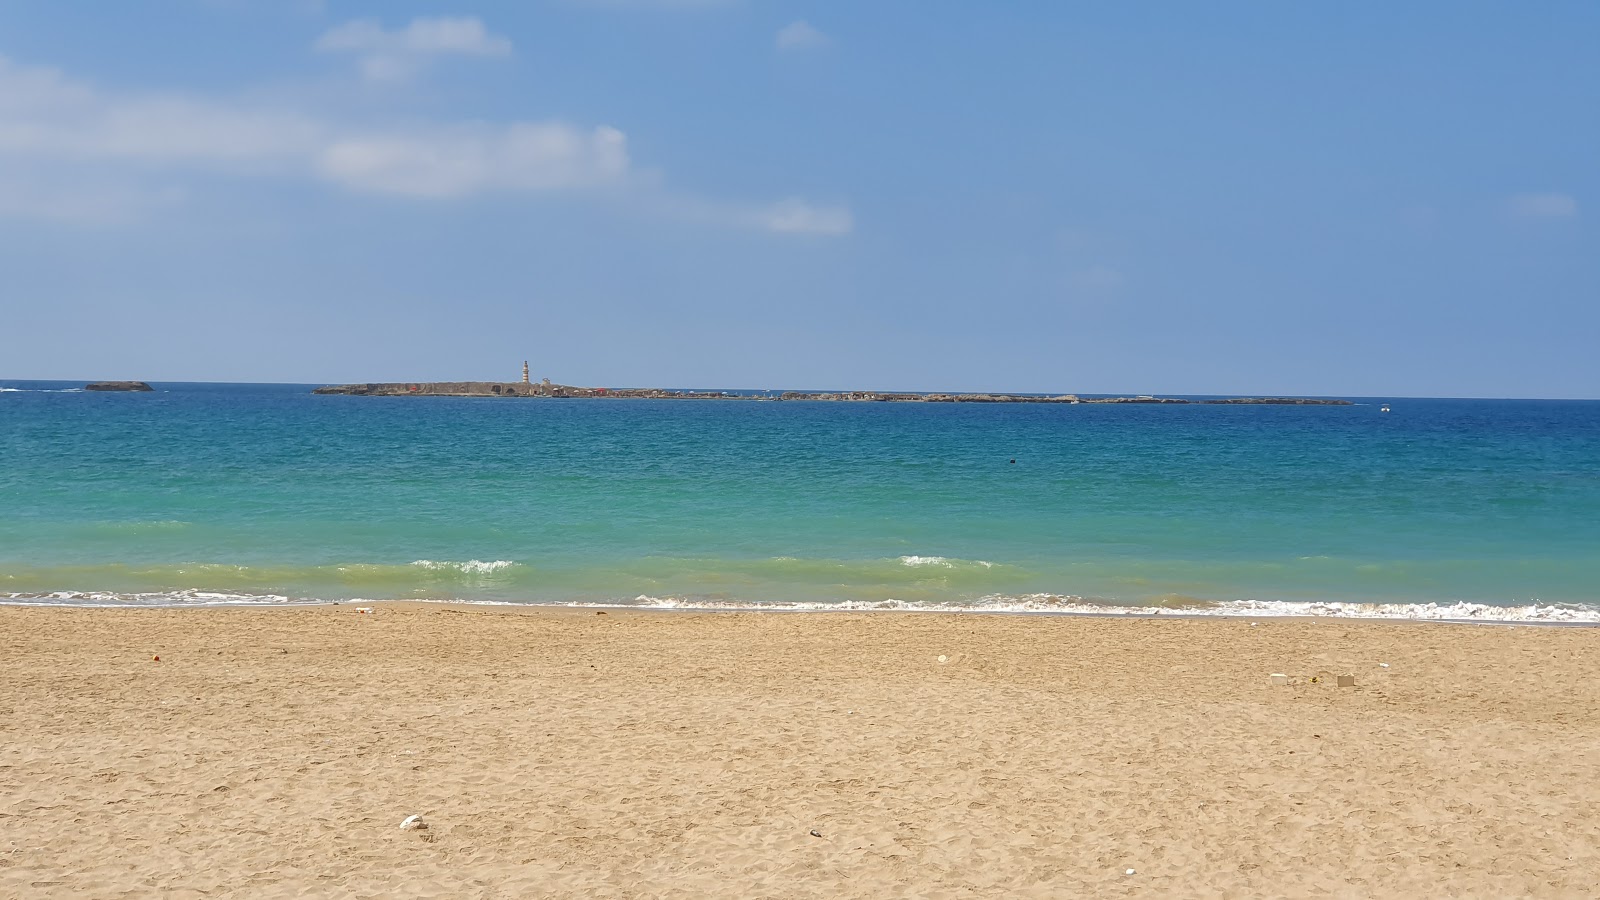 Saida Beach'in fotoğrafı geniş plaj ile birlikte